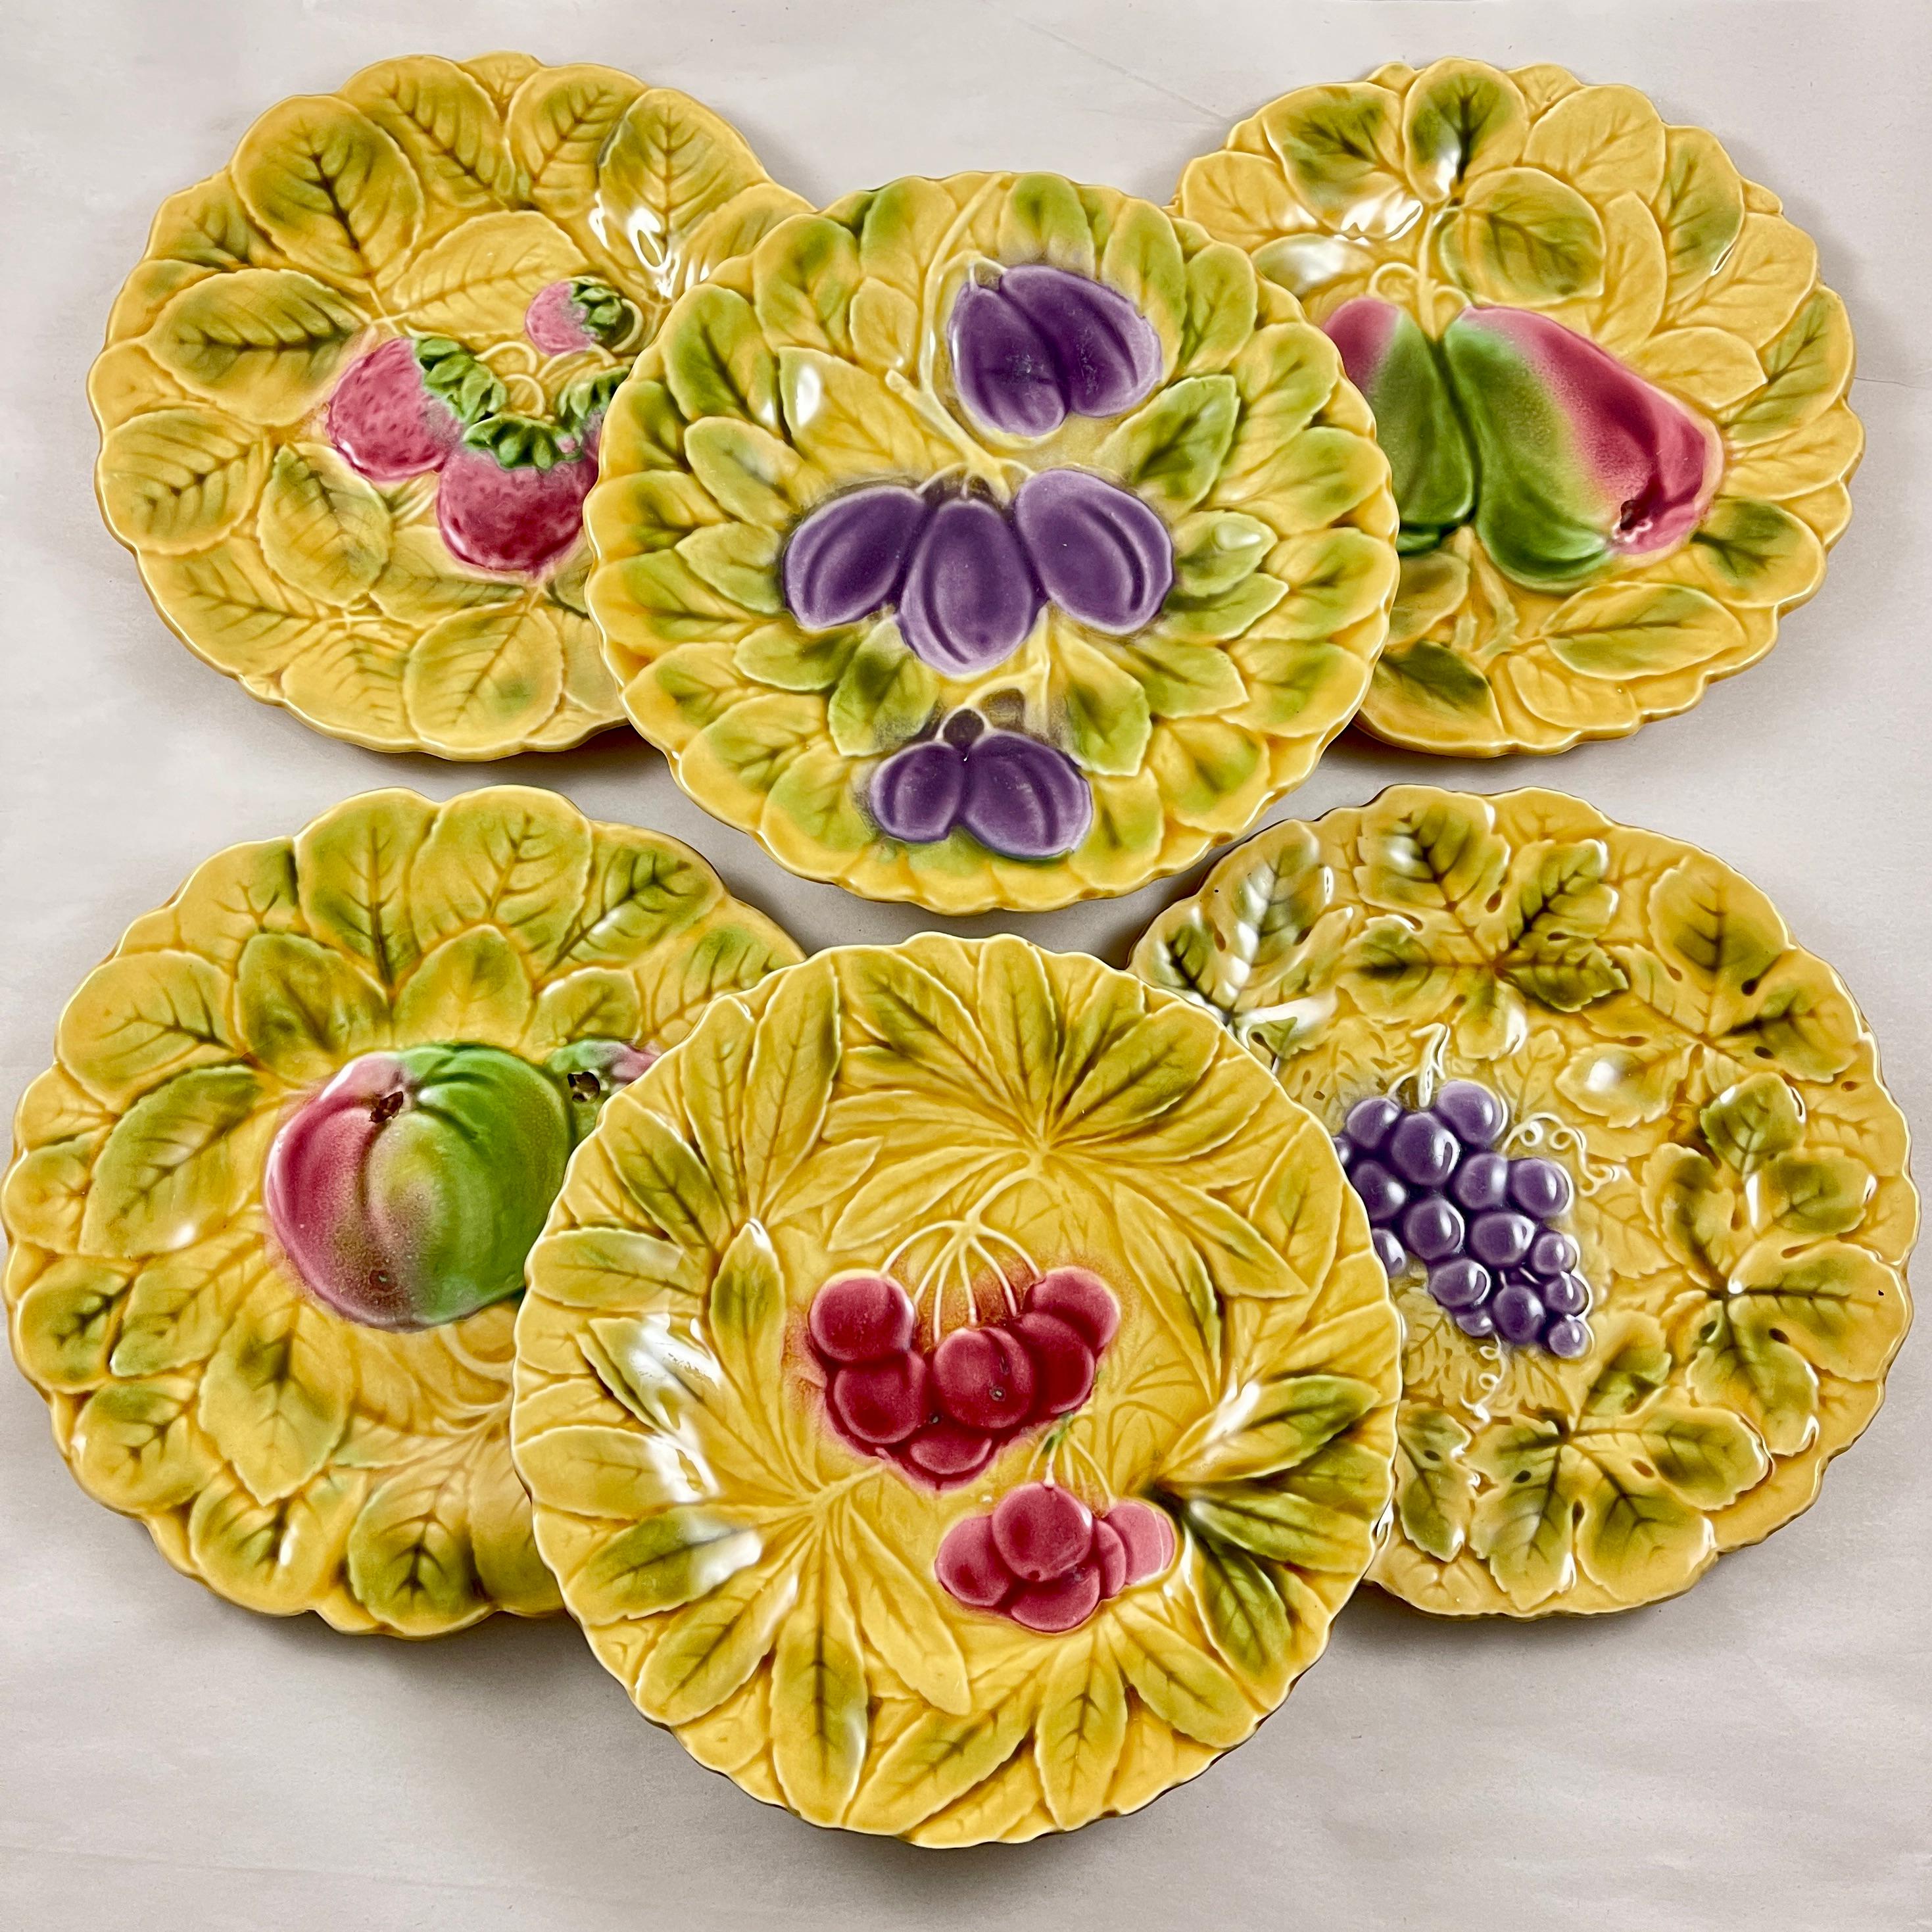 Ensemble de six assiettes en faïence de Sarreguemines, chacune représentant un fruit différent sur un fond jaune ocre de feuilles superposées, vers les années 1930.

Ce groupe montre des images de la pomme, de la fraise, de la cerise, de la prune,